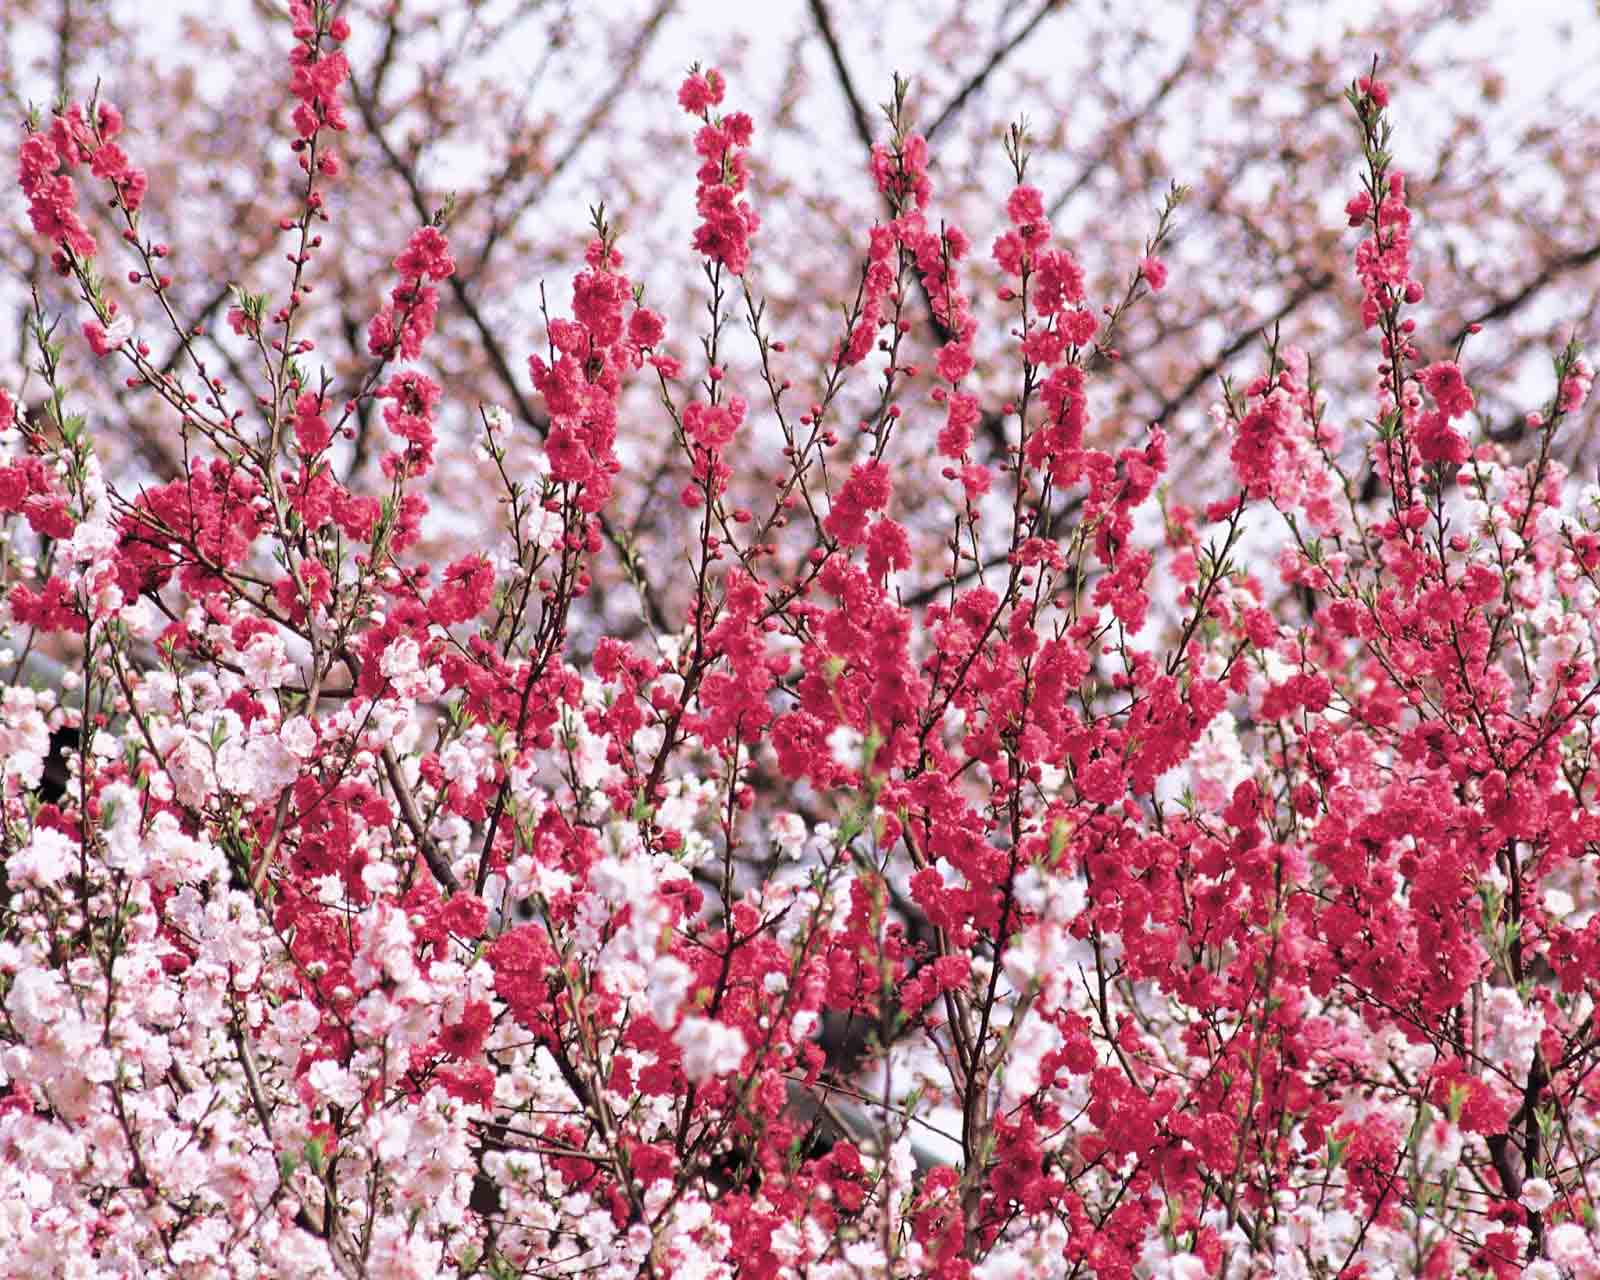 Những hình ảnh hoa đào tuyệt đẹp sẽ khơi gợi trí tưởng tượng của bạn về mùa xuân trong miền đất Việt. Thưởng thức bộ sưu tập hình ảnh hoa đào để được đắm chìm trong vẻ đẹp của loài hoa này.